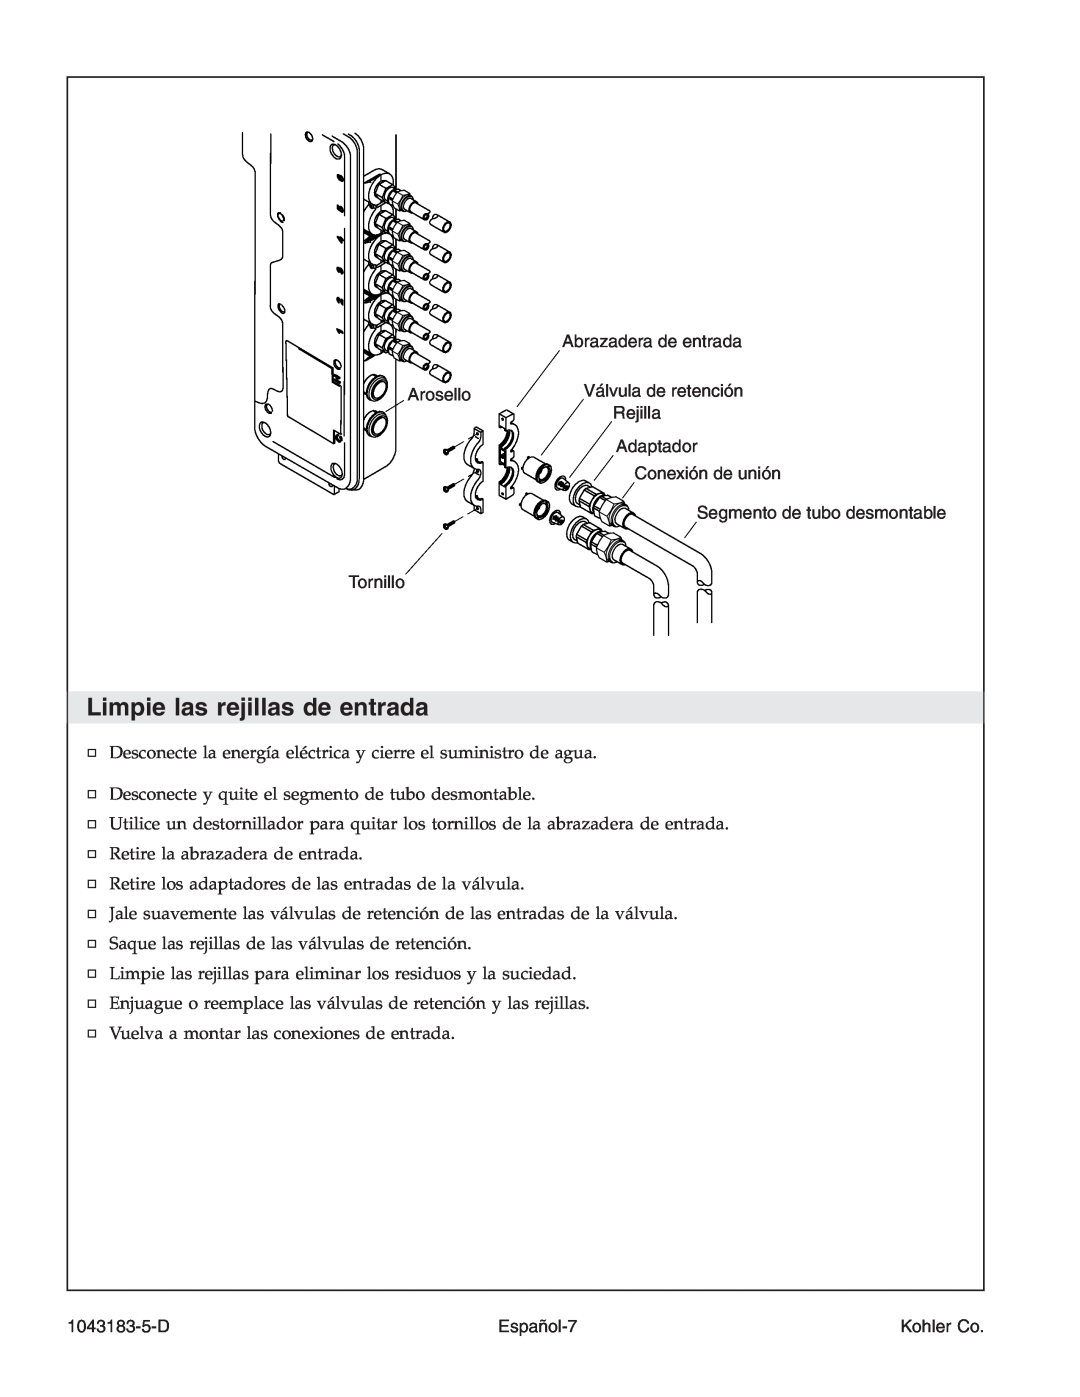 Kohler 1043183-5-D manual Limpie las rejillas de entrada, Arosello Tornillo, Abrazadera de entrada Válvula de retención 